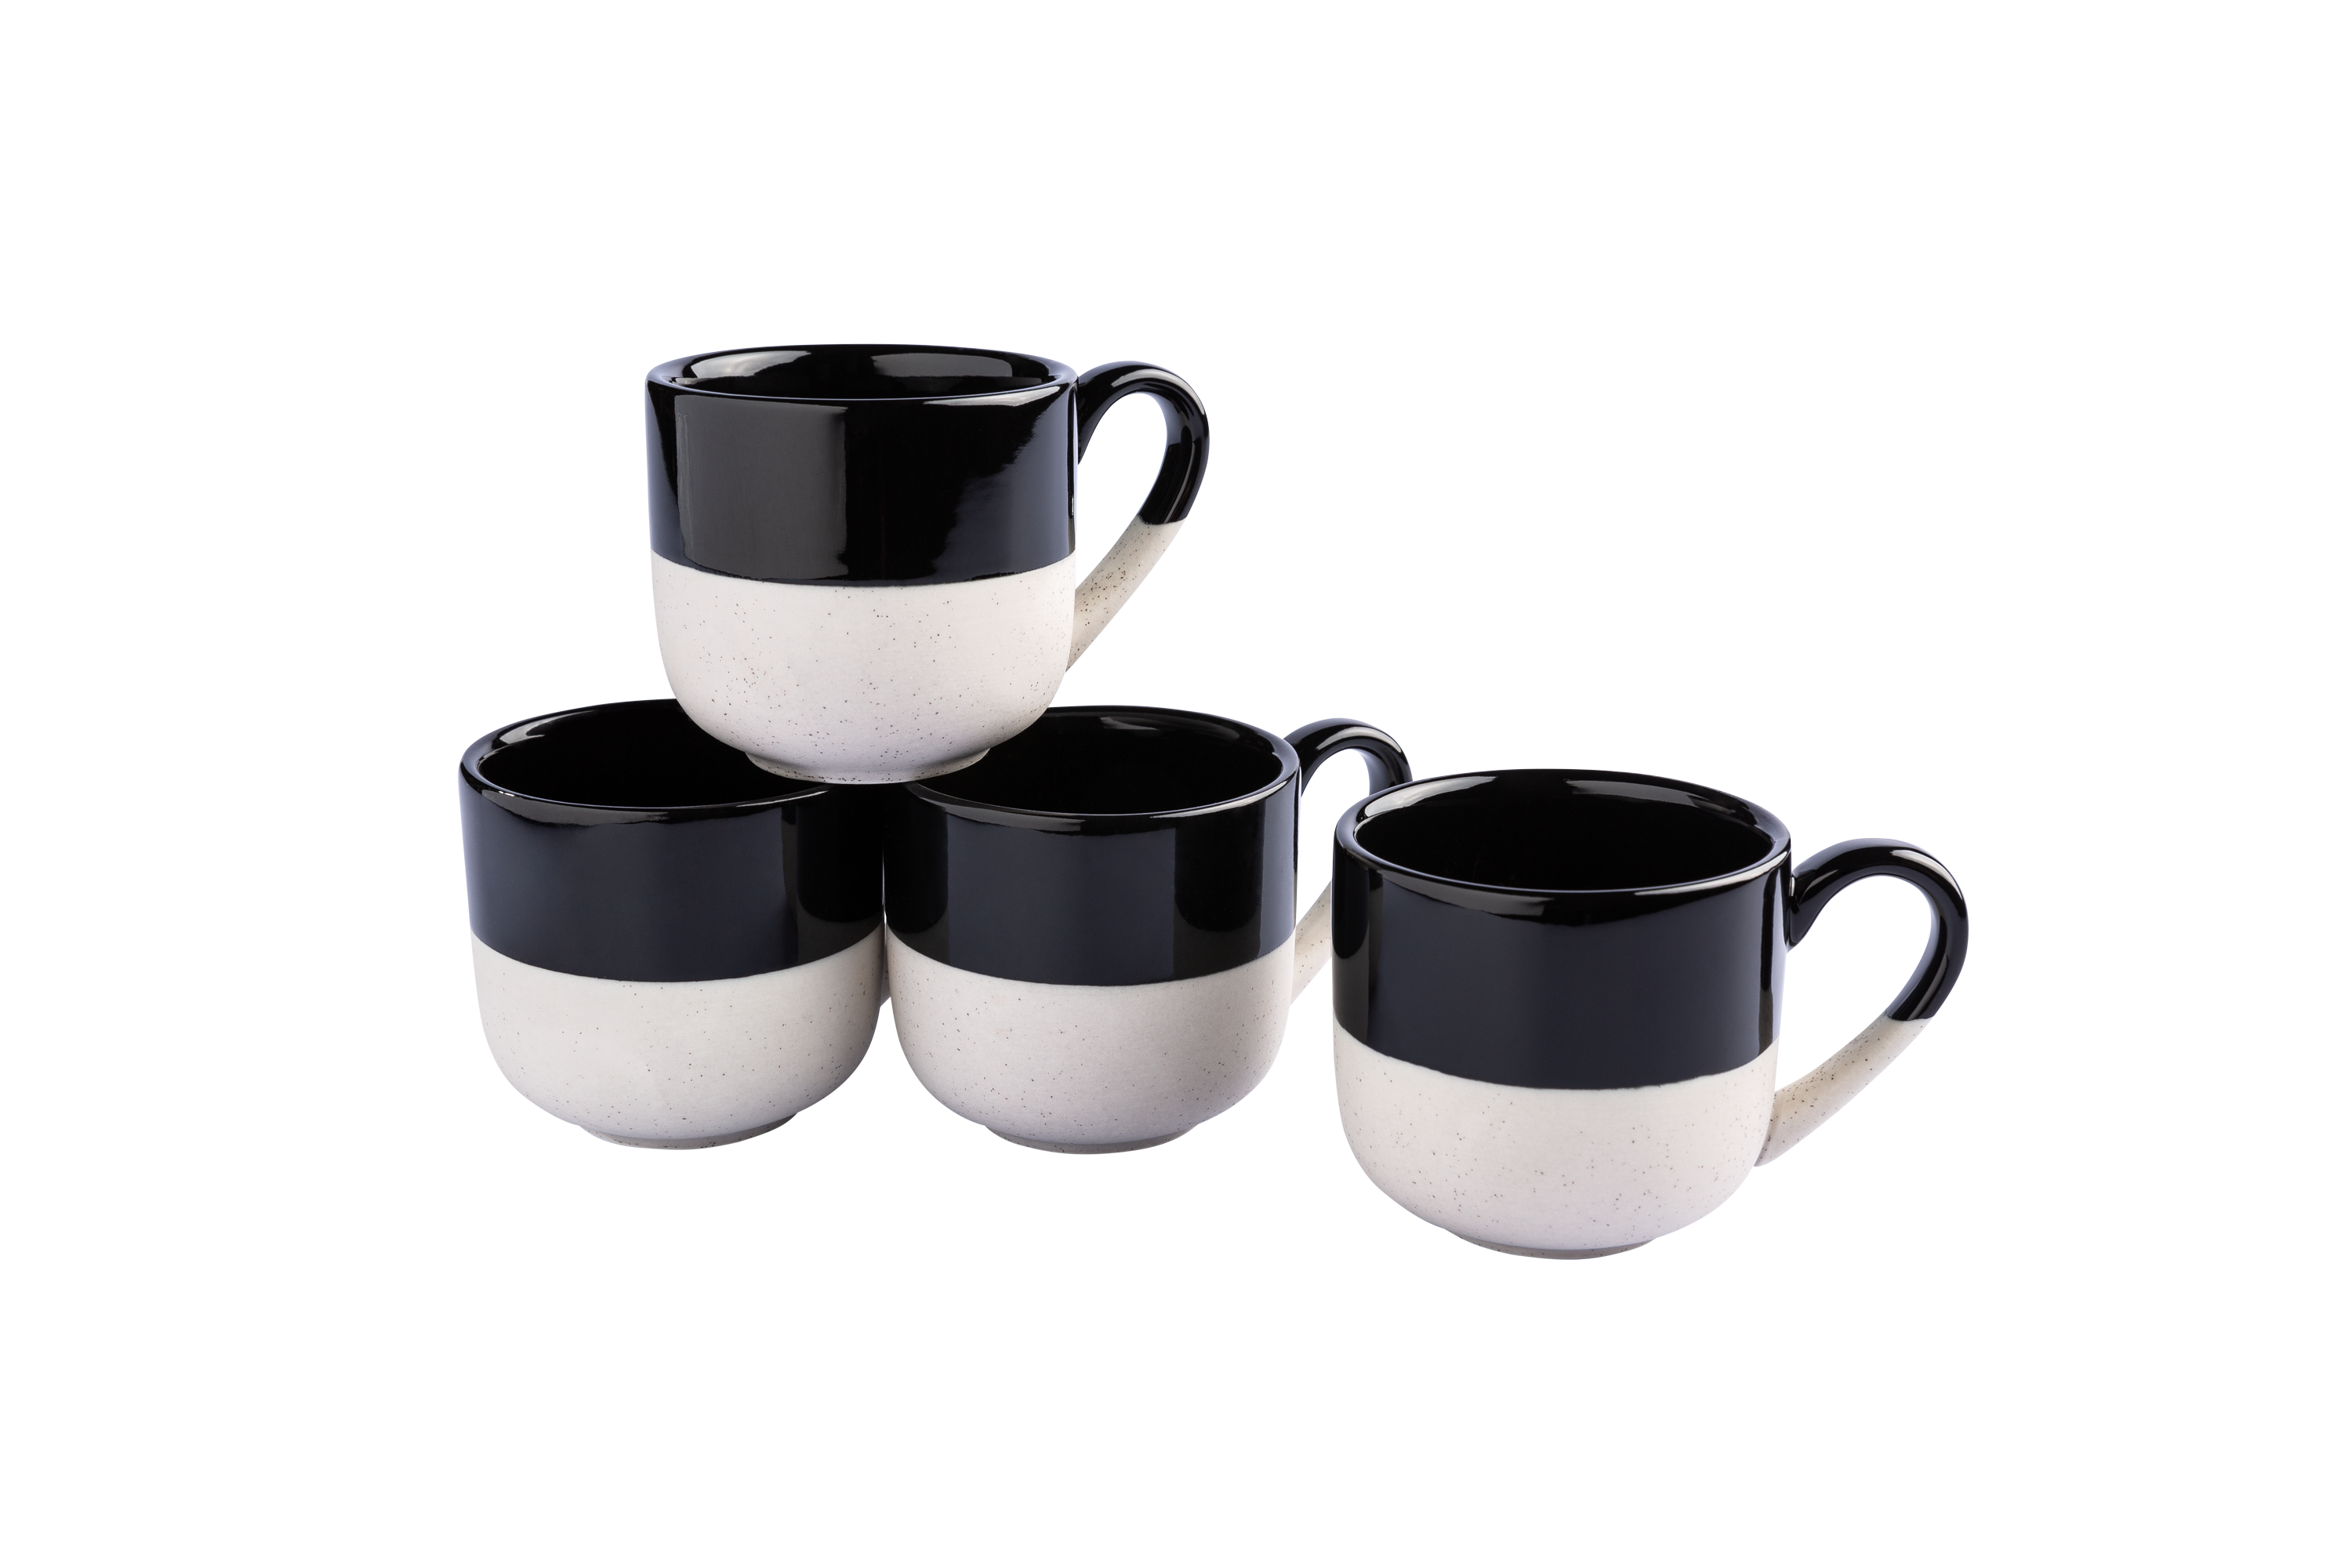 Schwarz-weiße Keramik-Tassen